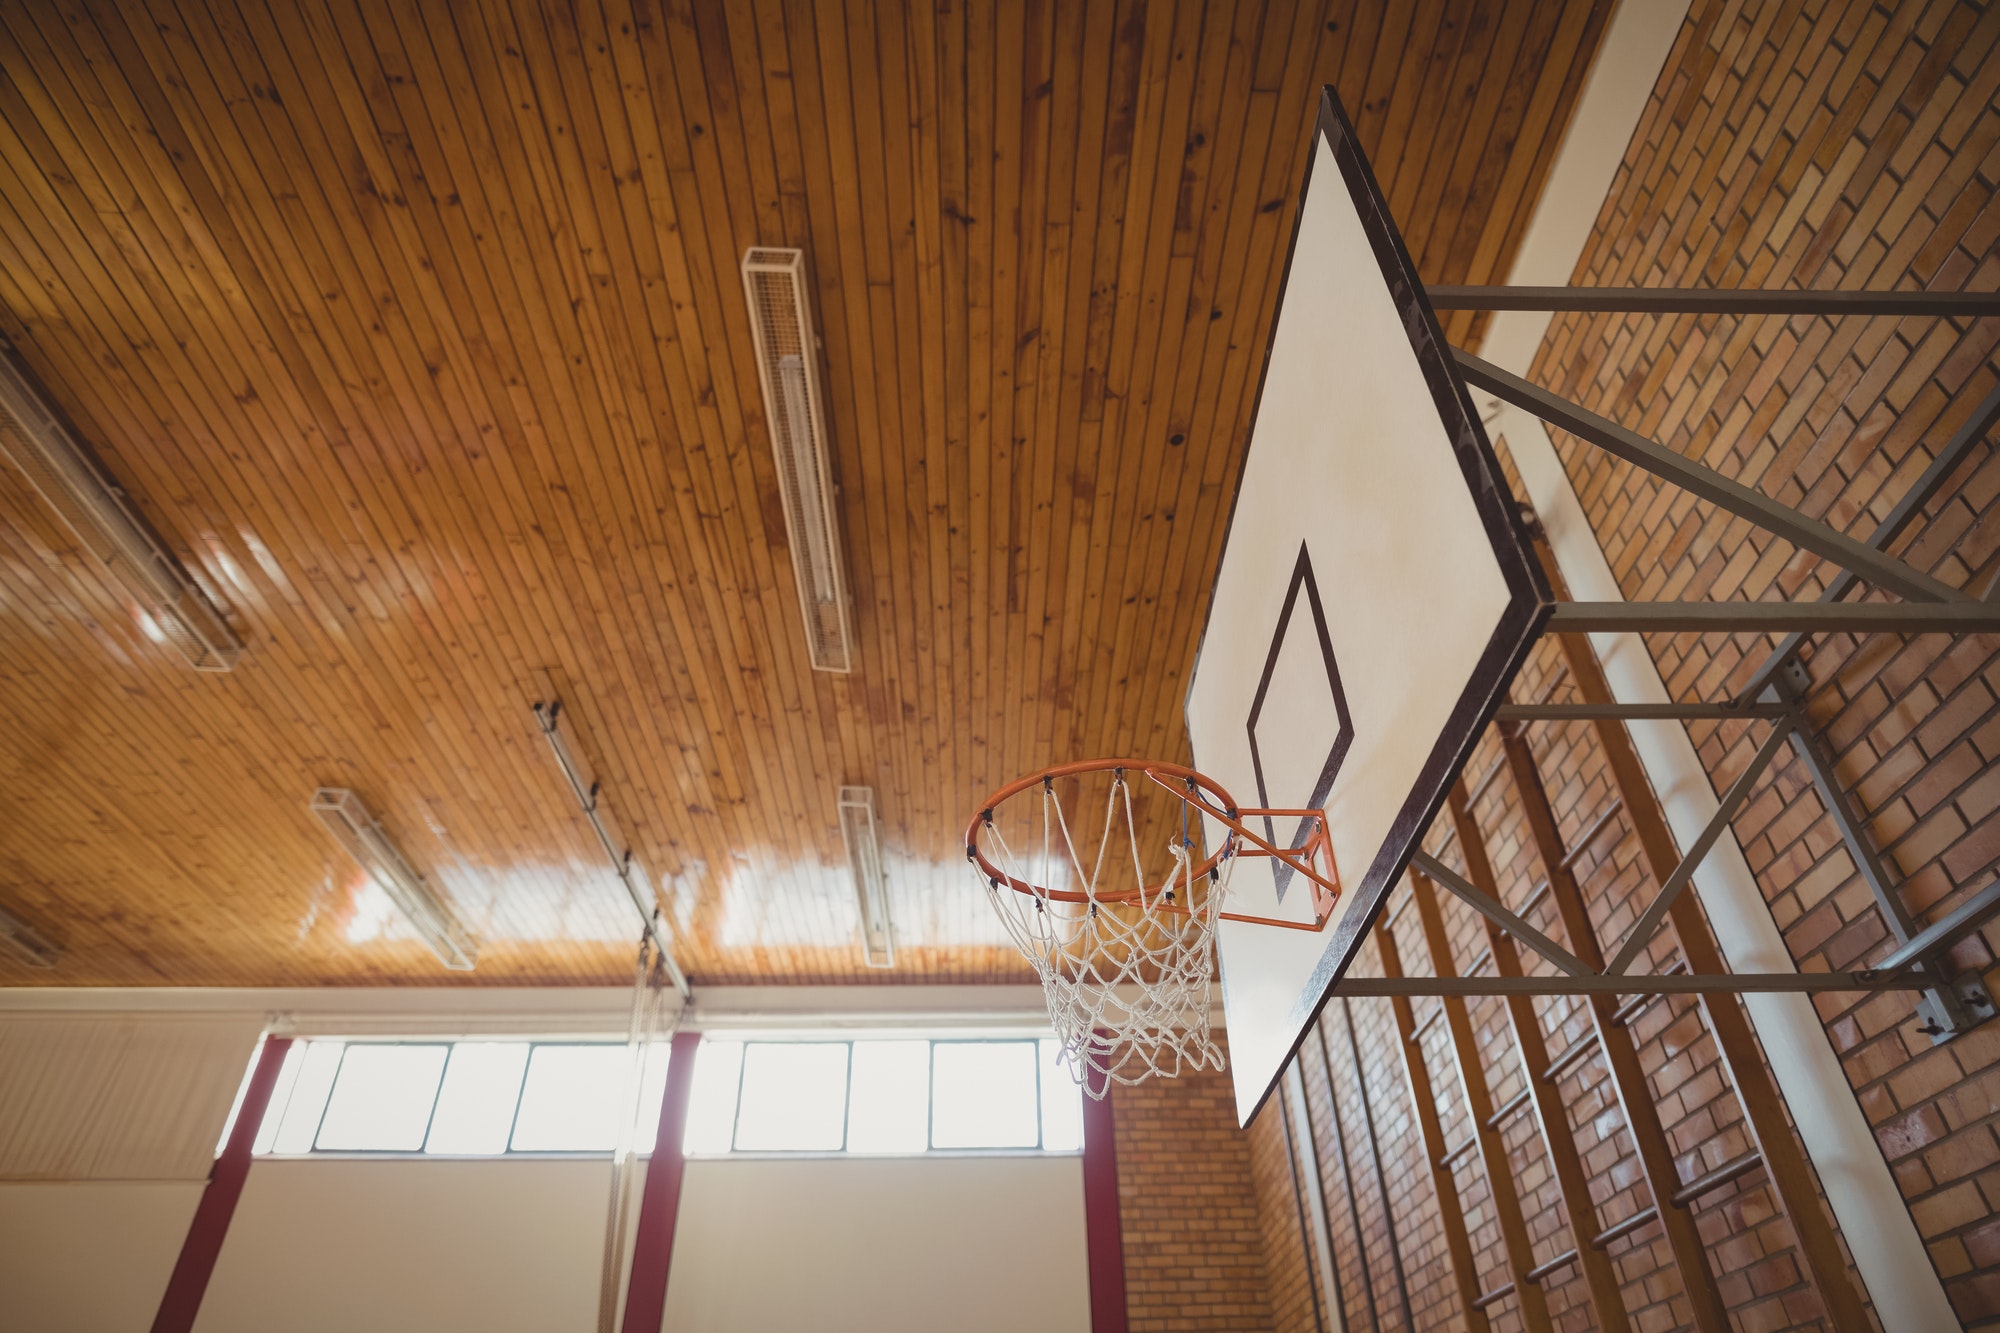 Comment choisir un emplacement idéal pour votre panier de basket